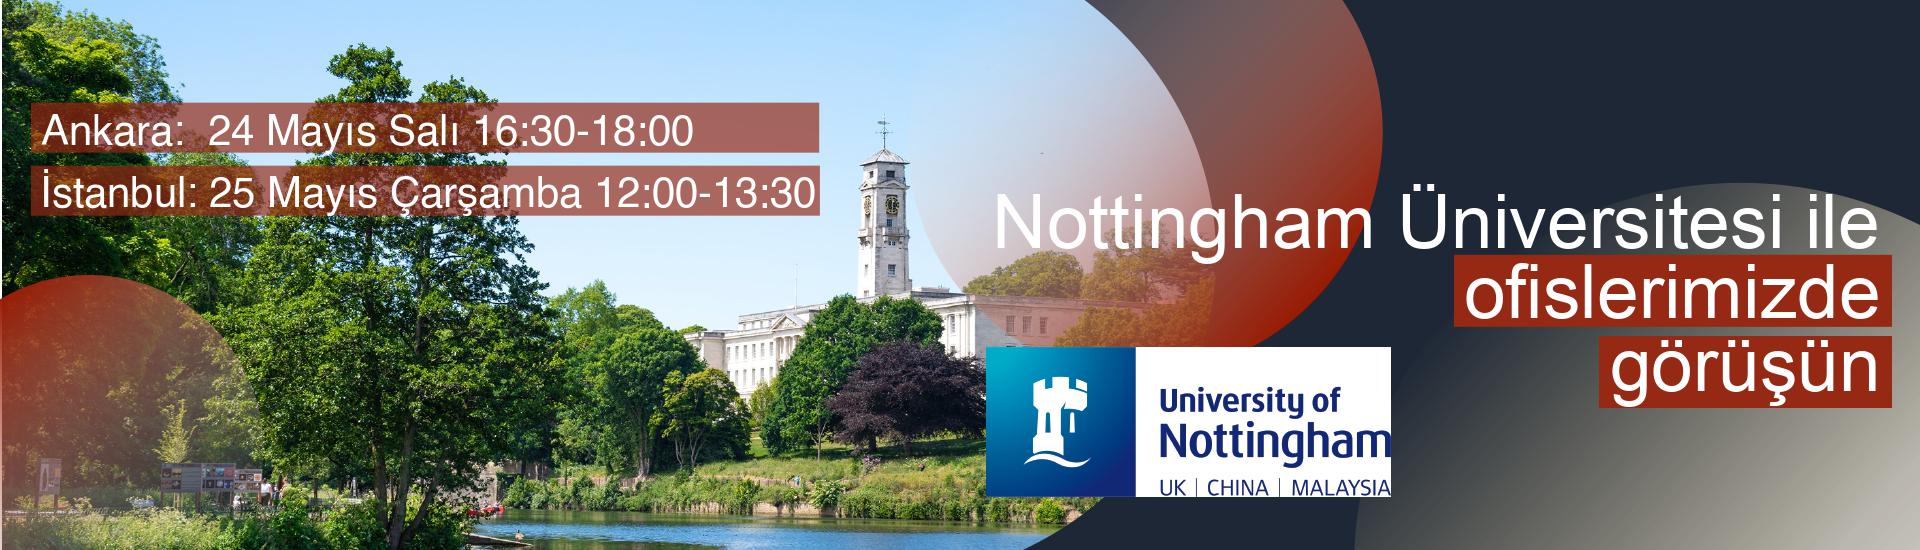 Nottingham-Universitesi-ile-Ofislerimizde-Gorusun